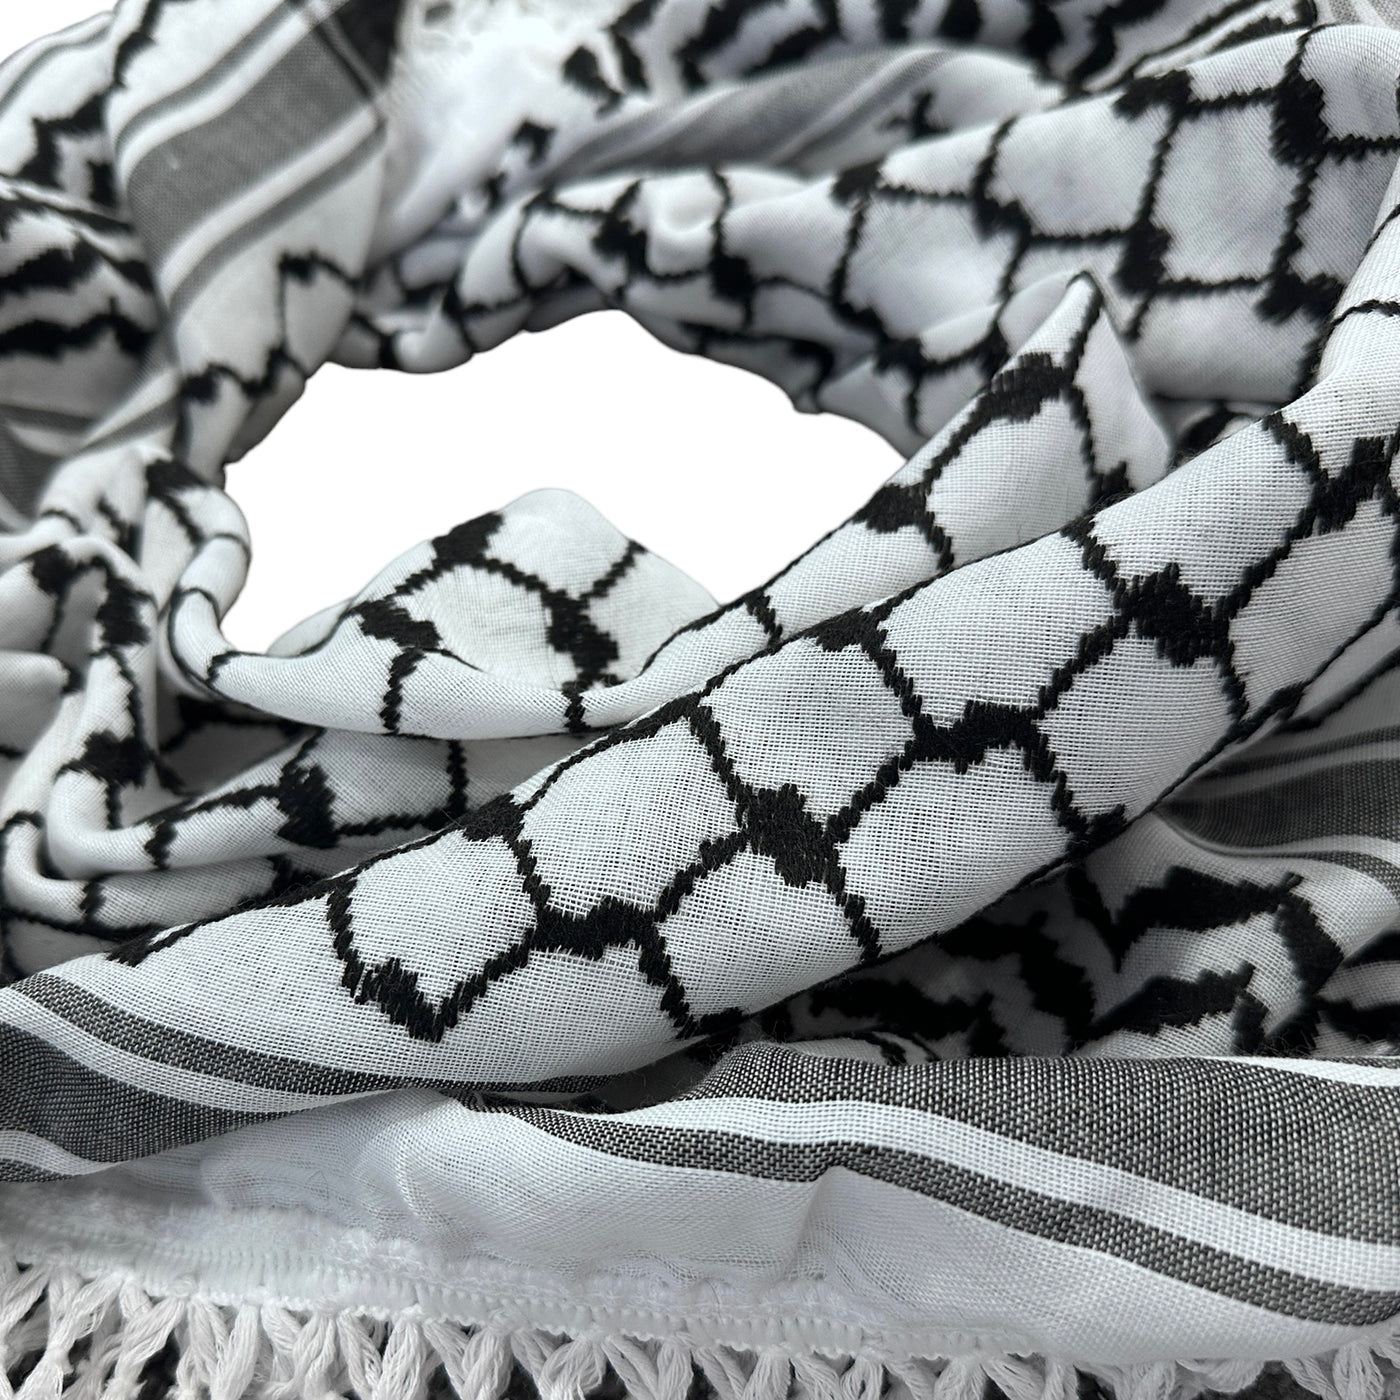 Woven Kufiya Black & White - Palestinian Made